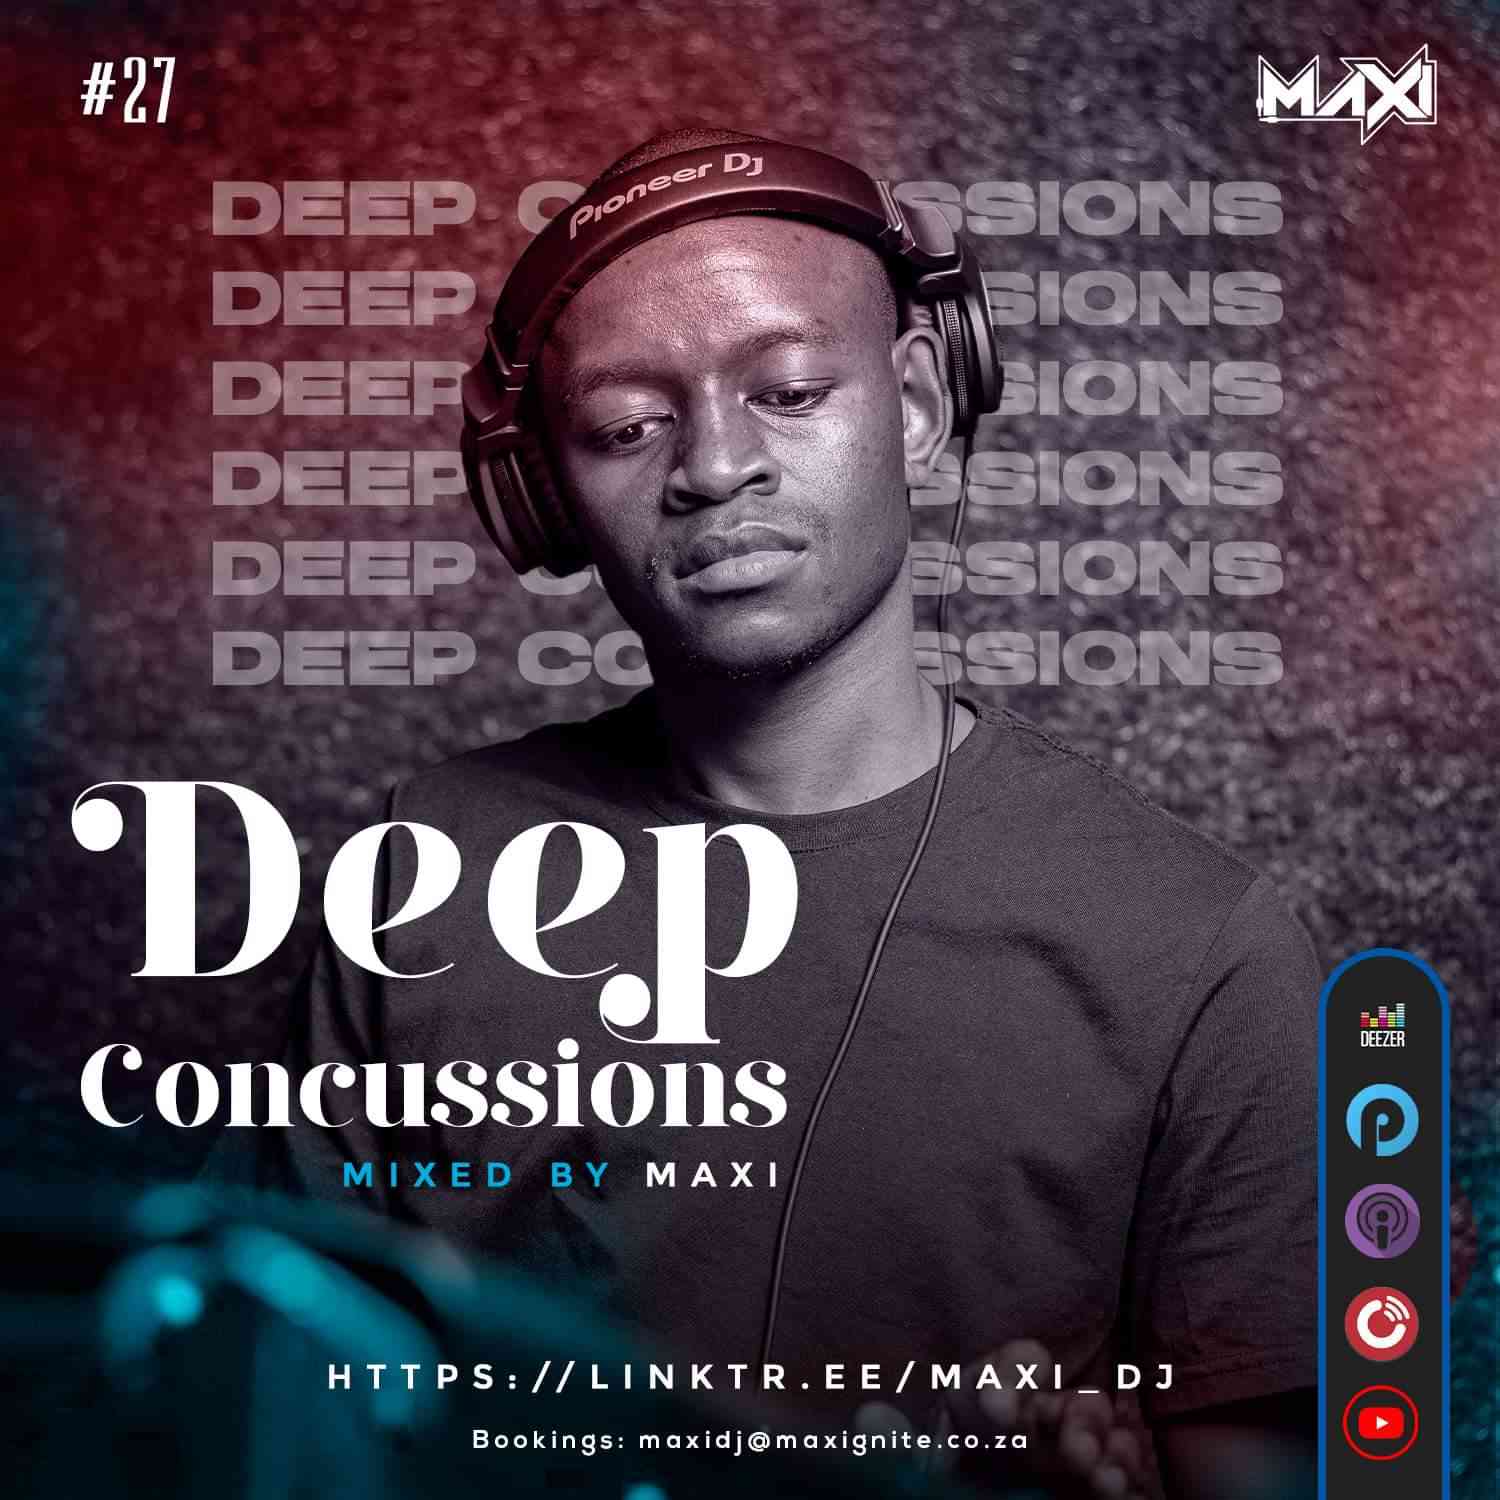 Dj Maxi Deep Concussions 027 Mix Mp3 Download Fakaza